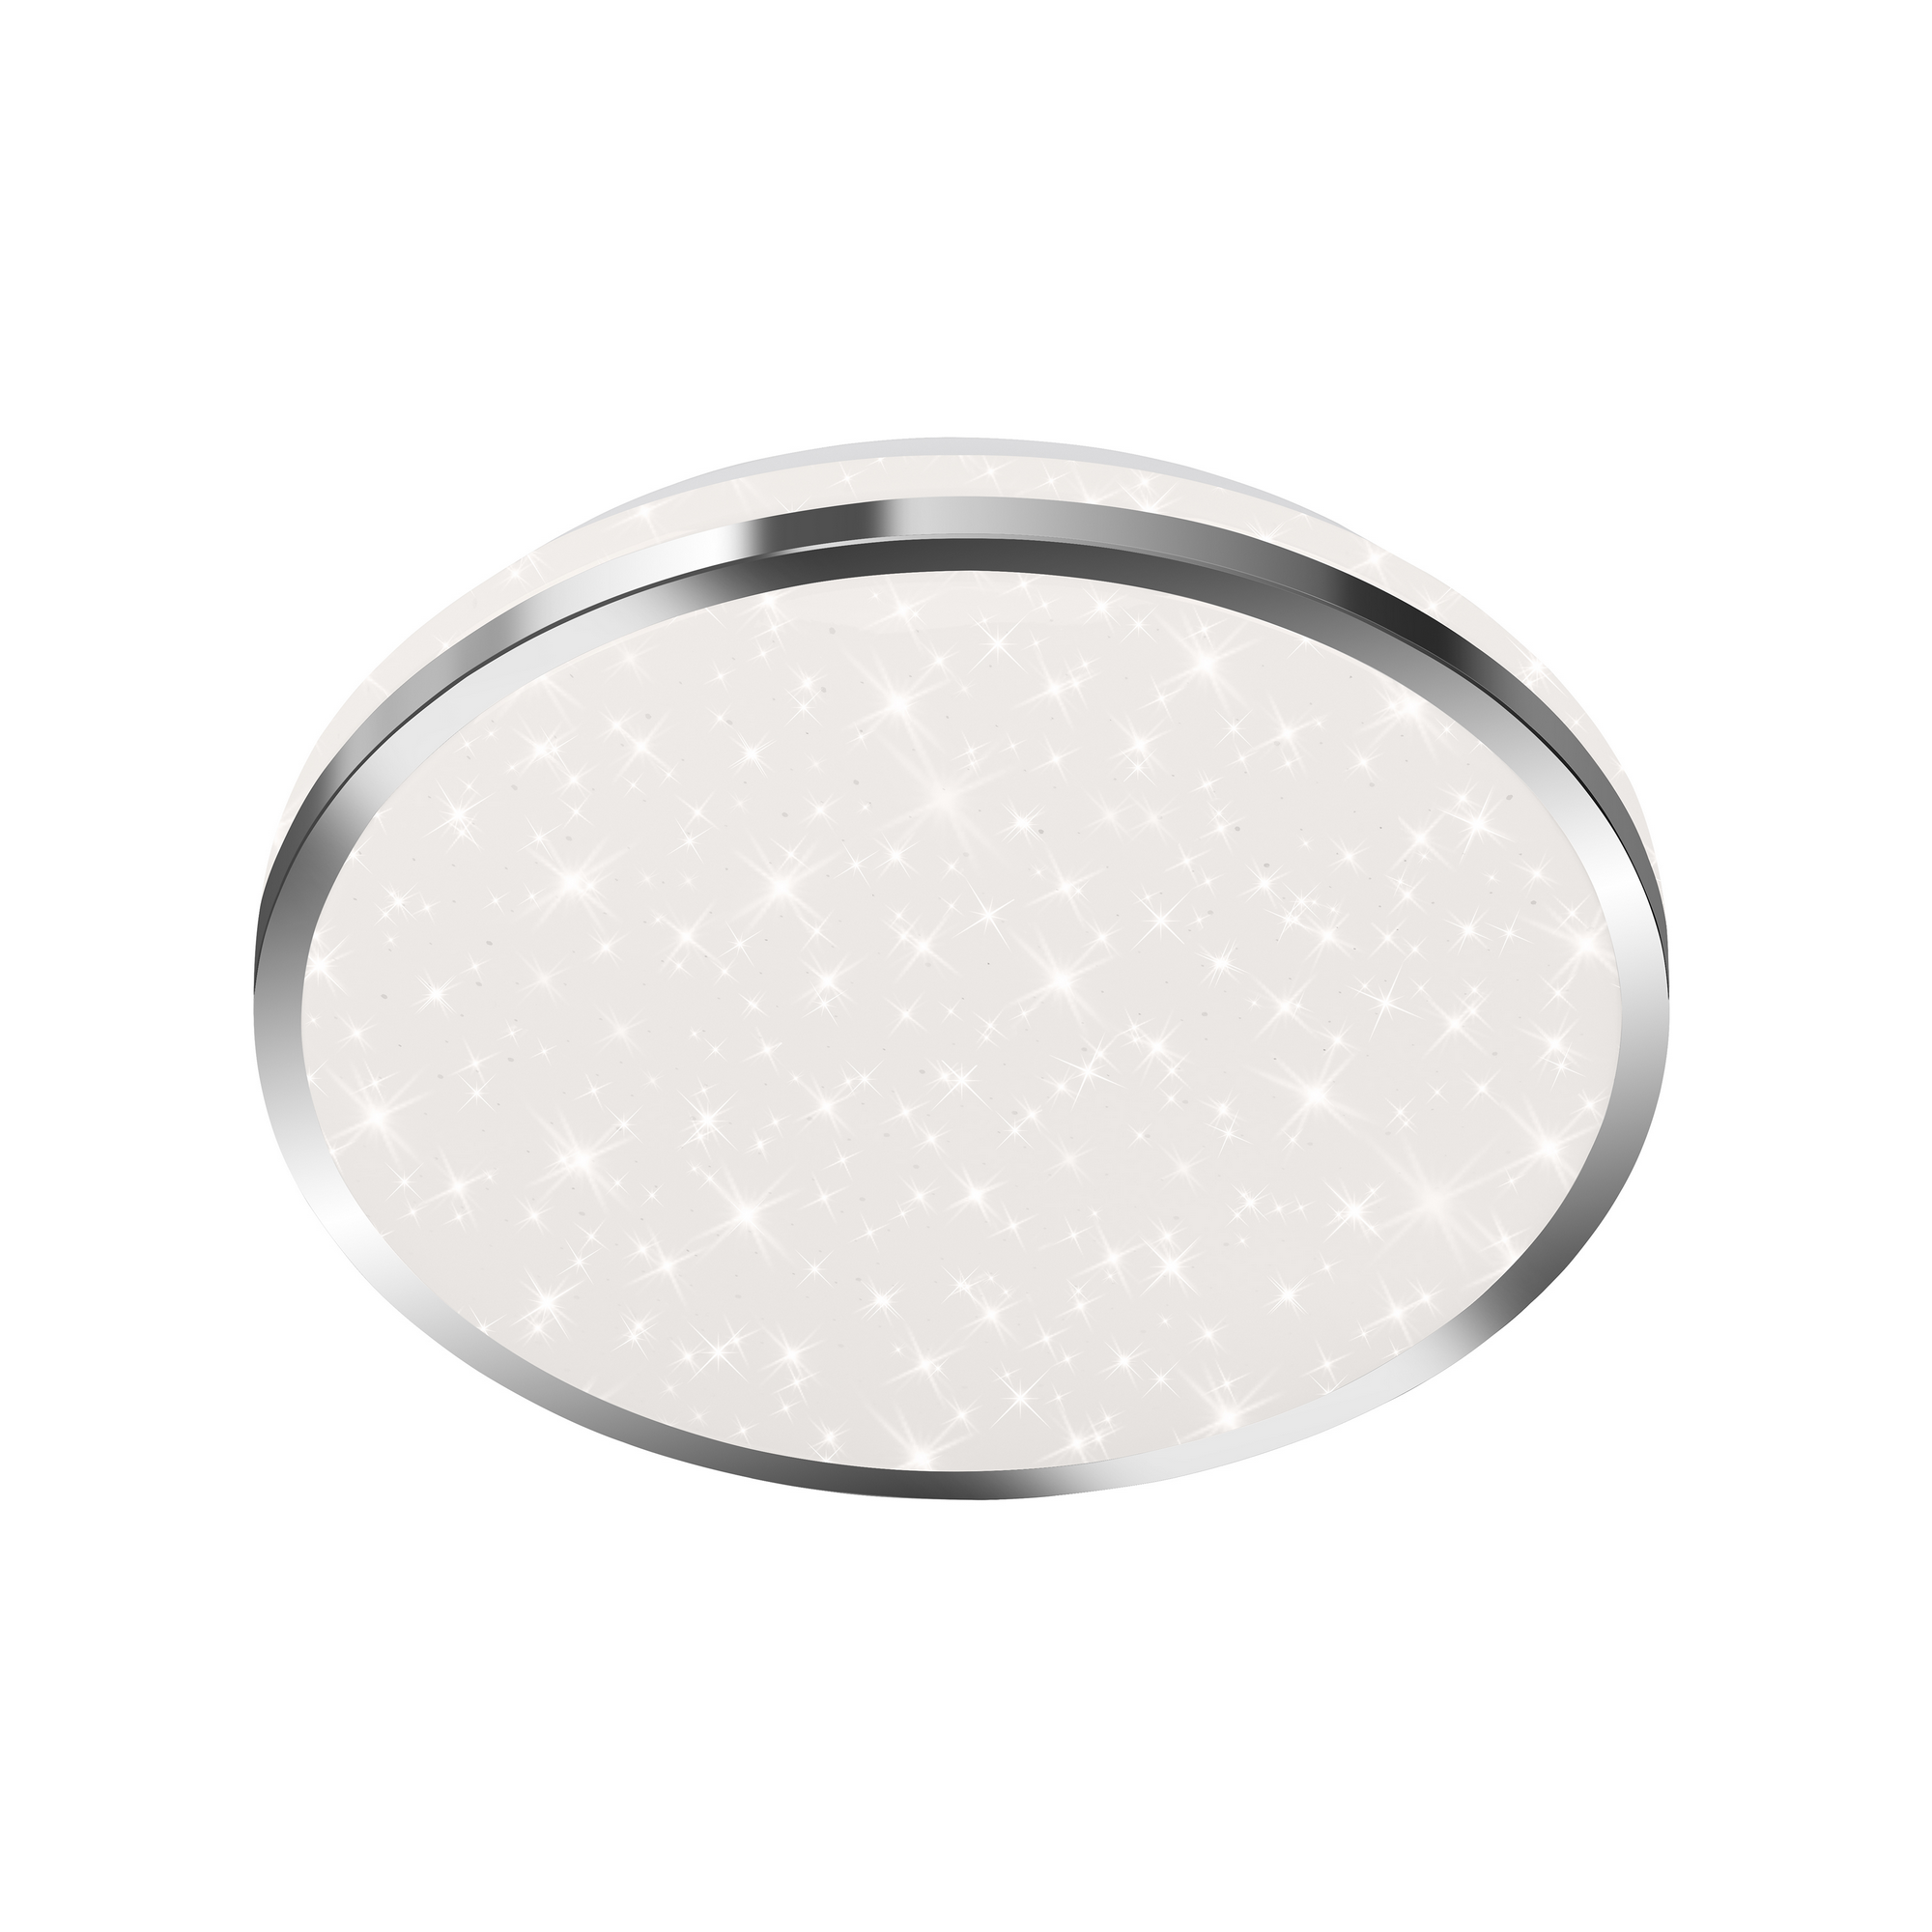 LED-Deckenleuchte 'Acorus' chromfarben/weiß Ø 28 x 7 cm 1200 lm, Sternenhimmeleffekt + product picture